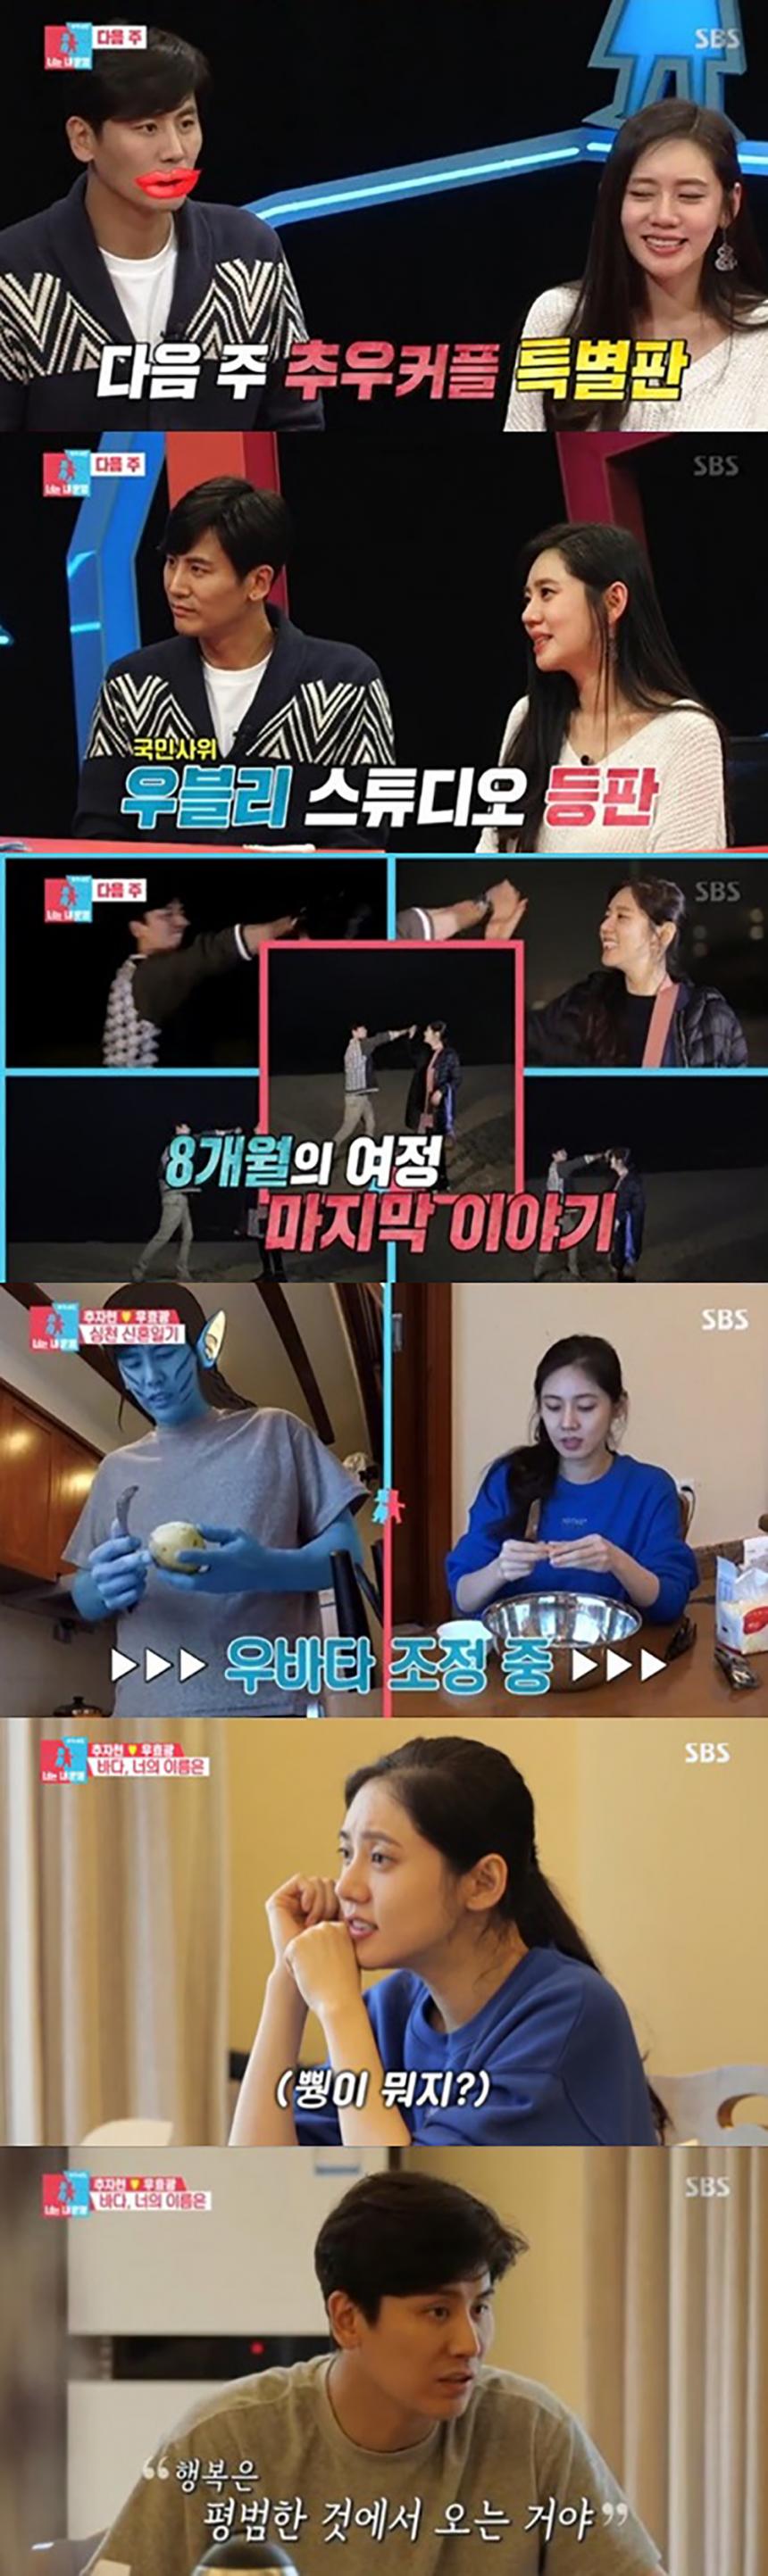 SBS ‘동상이몽 시즌2 - 너는 내운명’ 방송 캡처